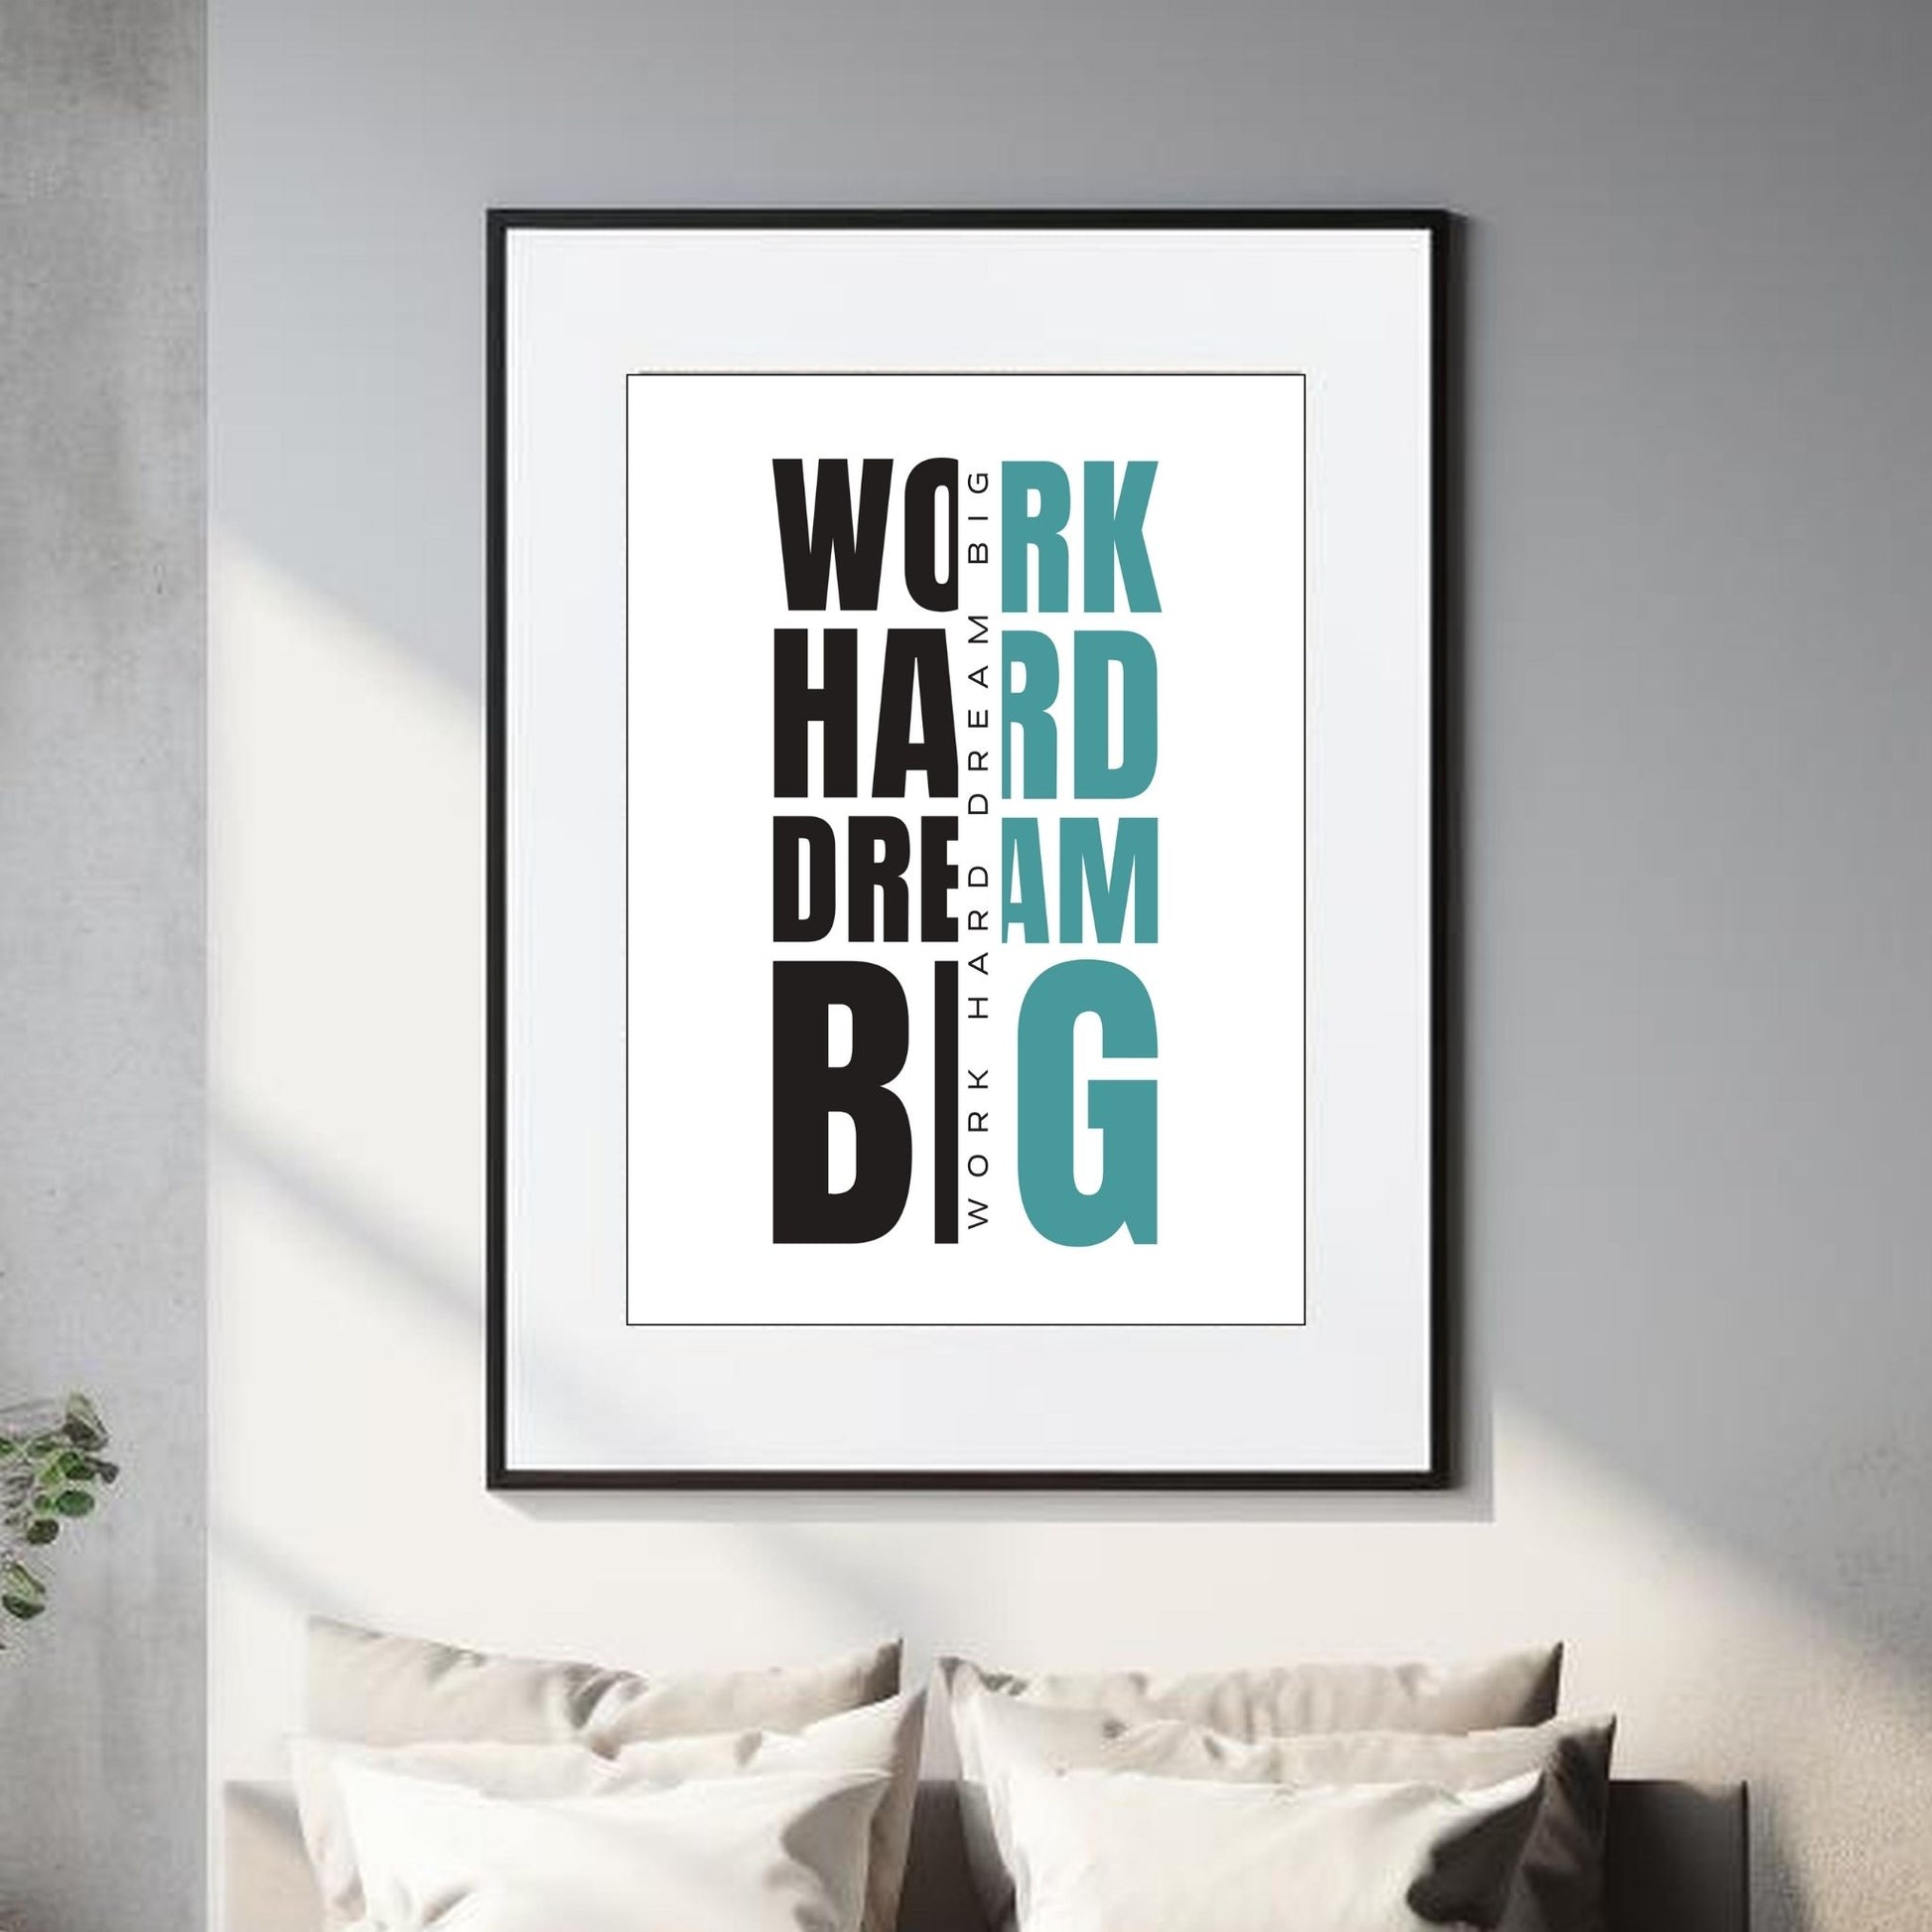 "work hard dream big" - tekstplakat med sort og grønn tekst, og hvit bakgrunn.  Illustrasjon viser plakat i sort ramme og hvit passepartout.